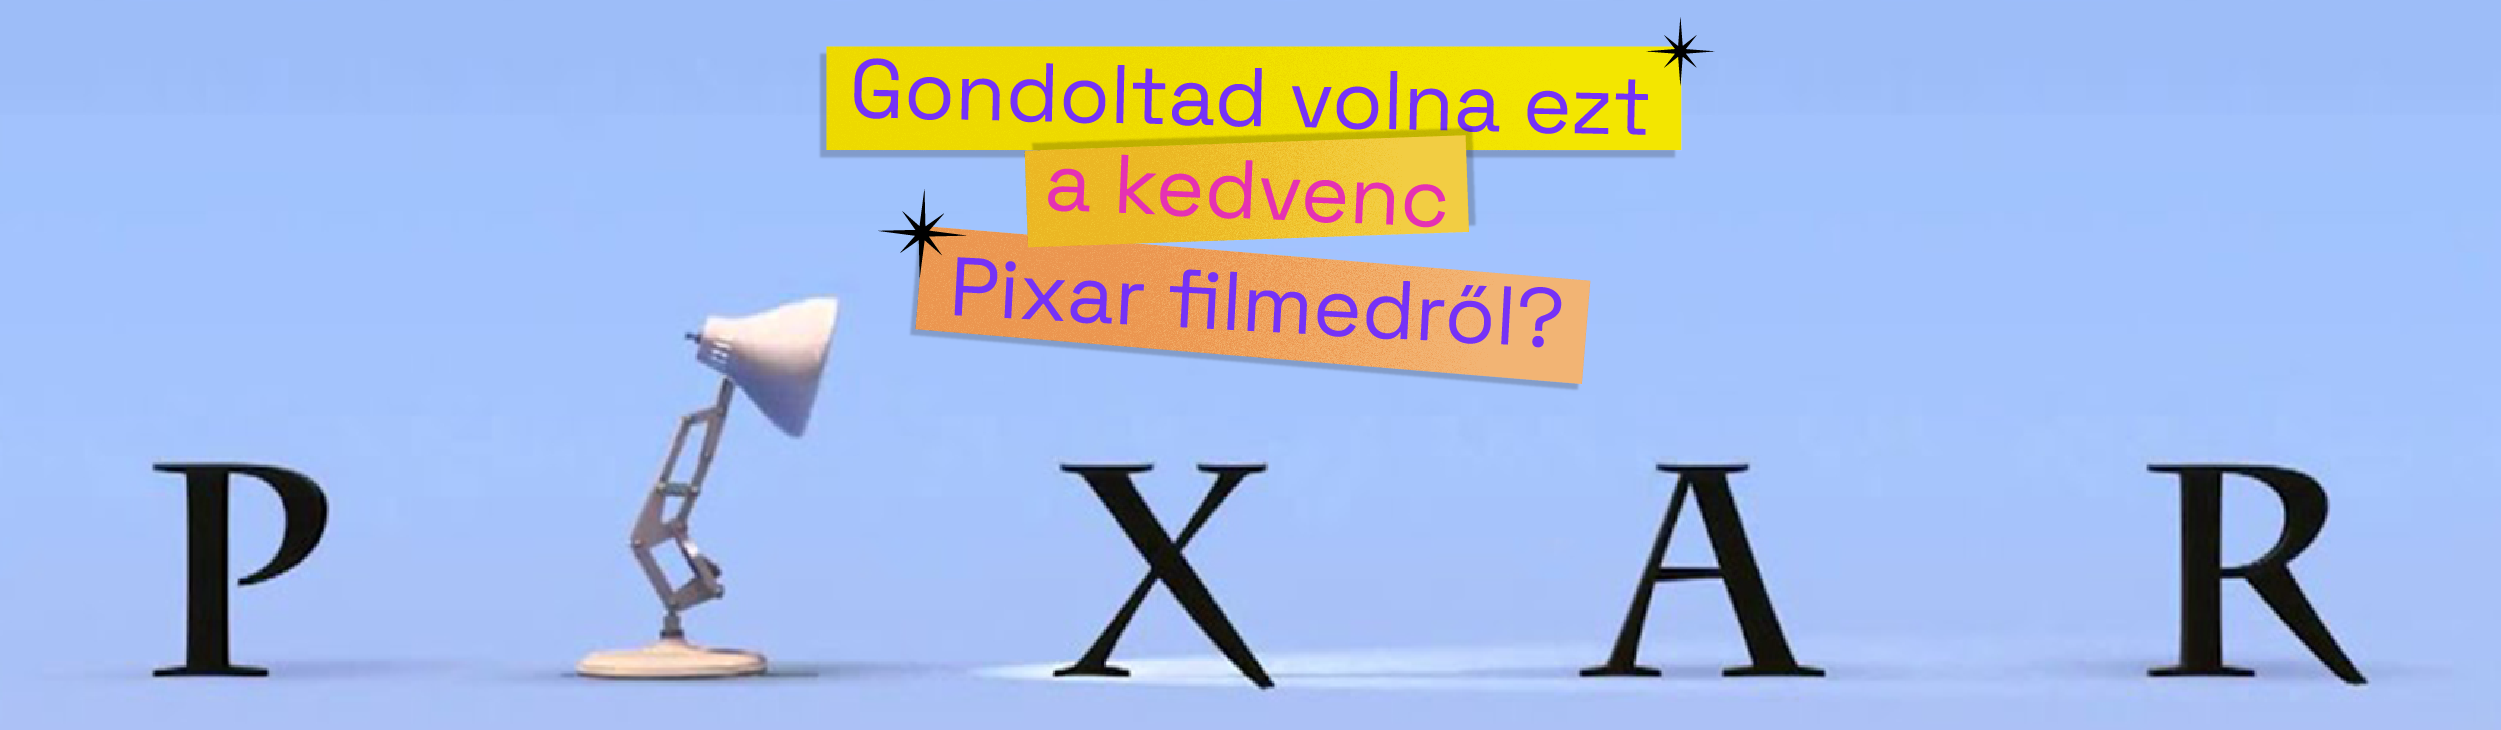 Gondoltad volna EZT a kedvenc Pixar filmedről?